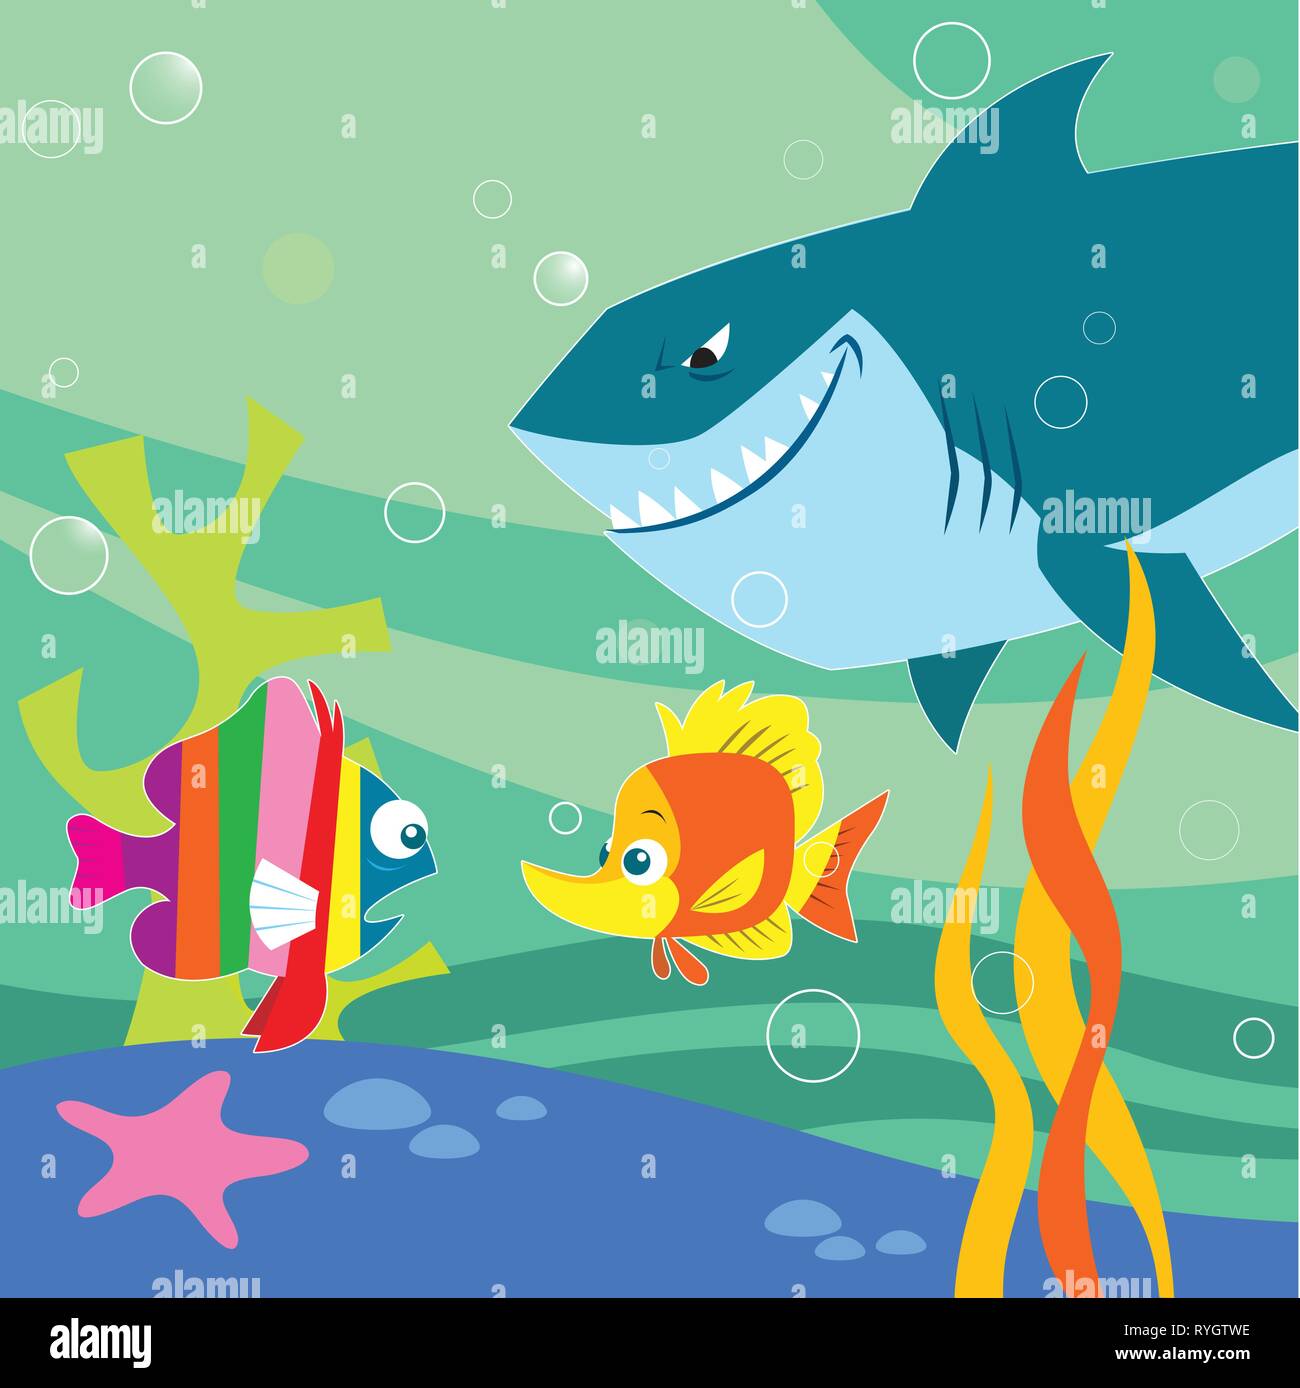 L'illustration montre un paysage sous-marin avec de petits poissons et de requin. Illustration réalisée avec un style cartoon, sur des calques distincts. Illustration de Vecteur